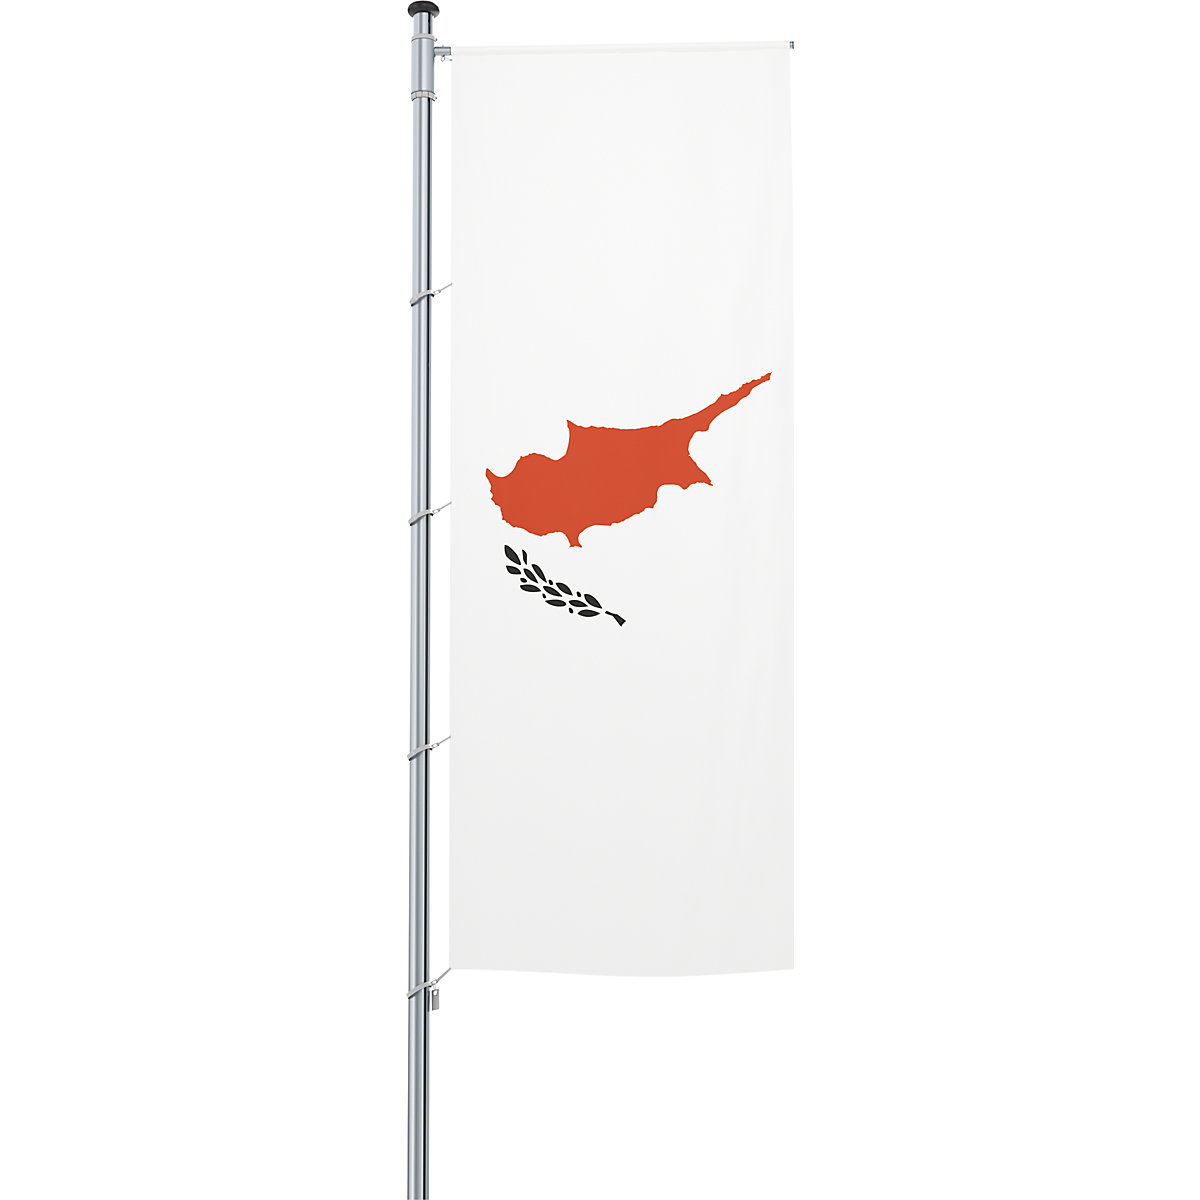 Zastava s prečko/državna zastava – Mannus (Slika izdelka 36)-35